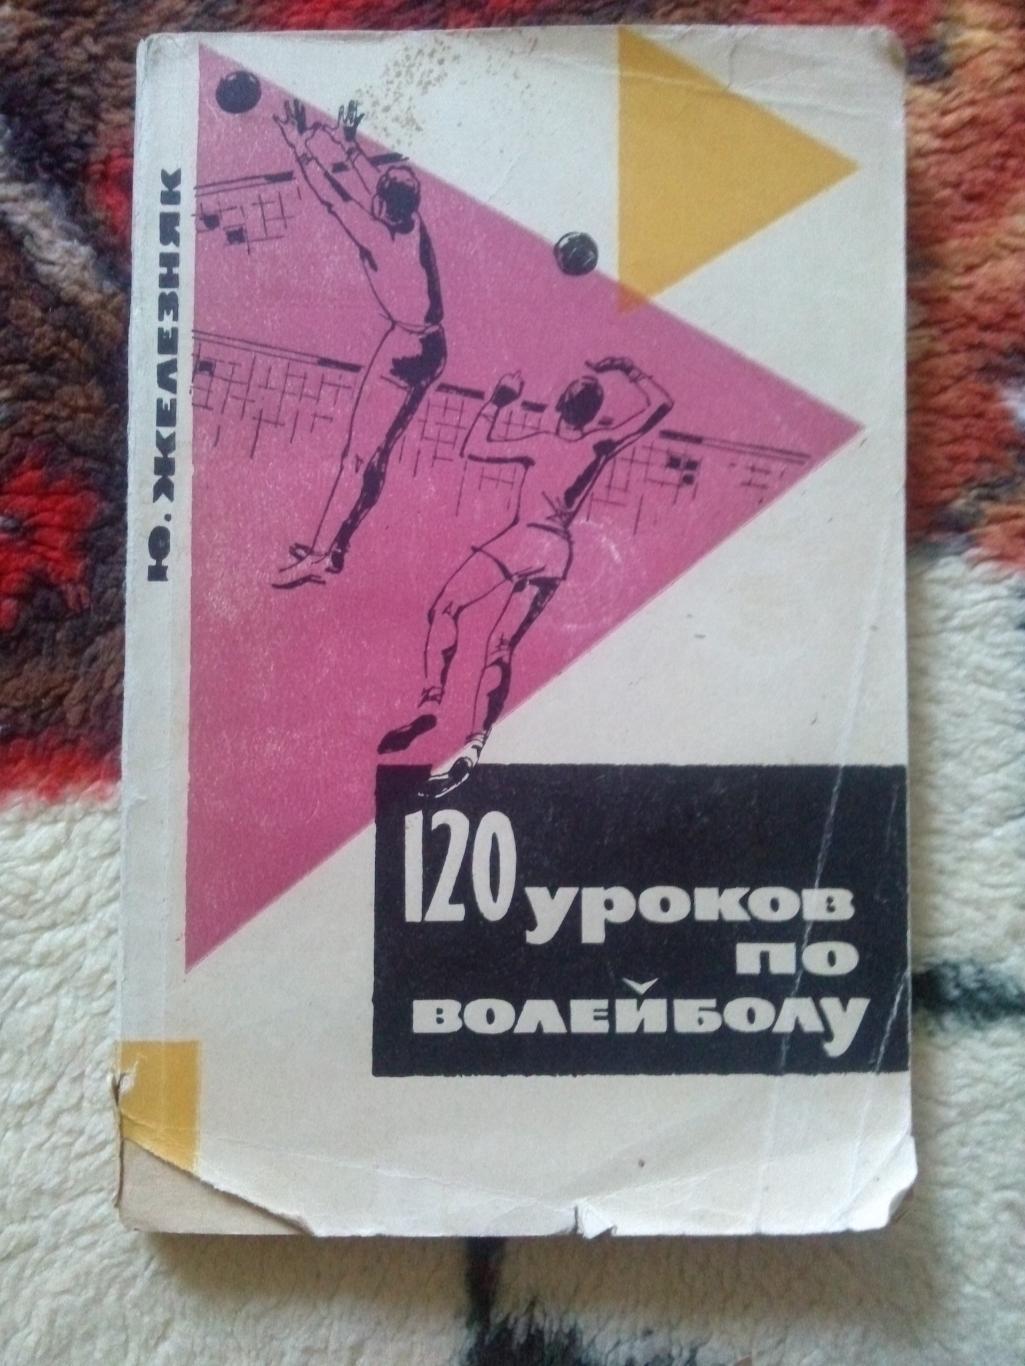 Ю. Железняк -120 кроков по волейболу1965 г.ФиС( Волейбол , спорт )